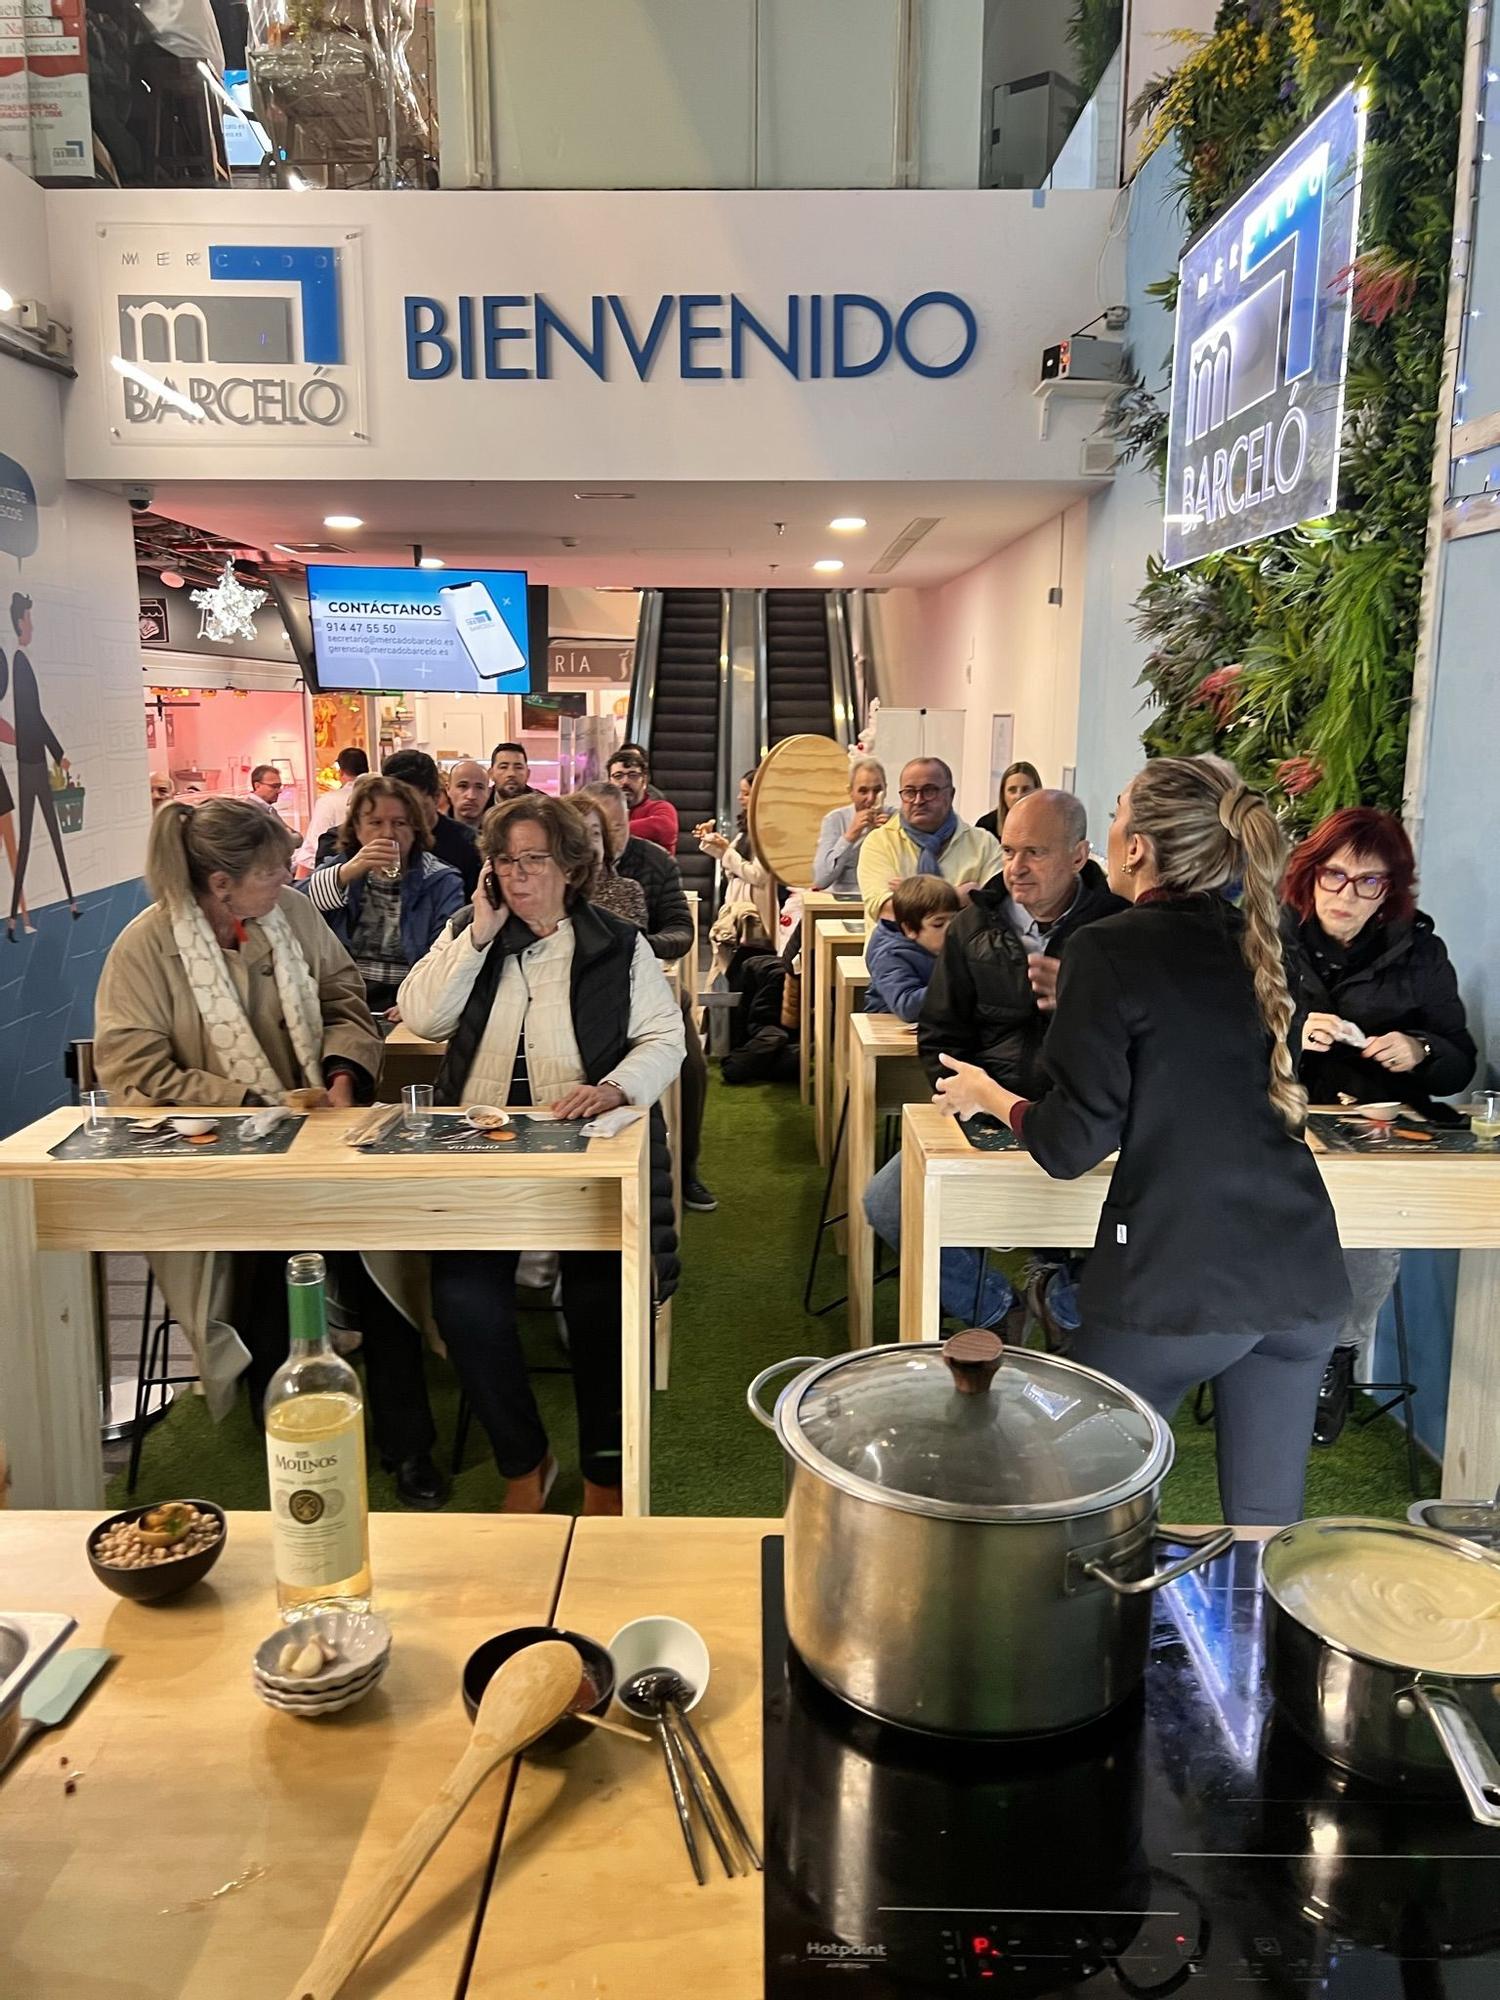 Así es la promoción del mejillón gallego que realiza Opmega en el Mercado Barceló de Madrid.